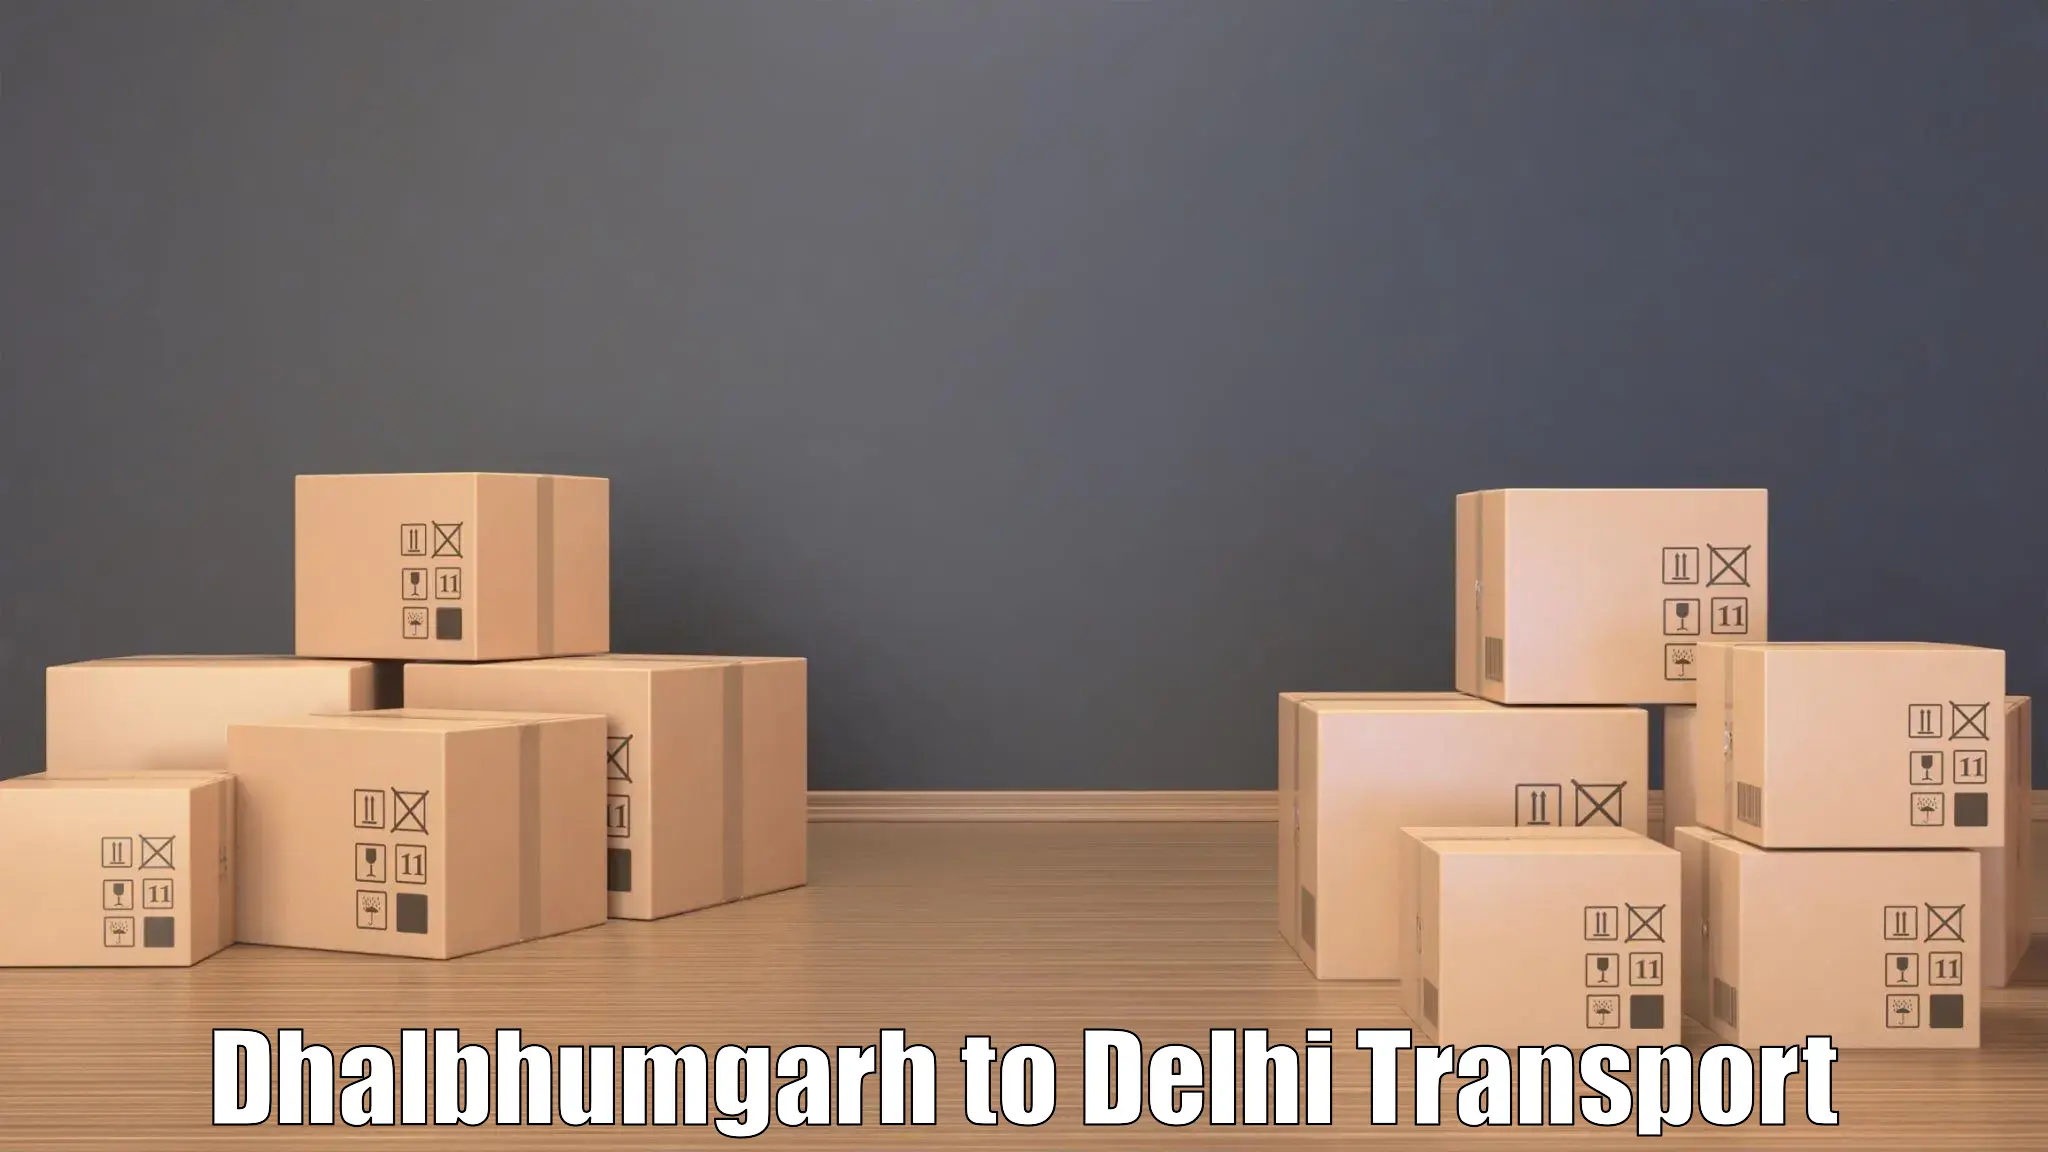 Transportation solution services Dhalbhumgarh to IIT Delhi